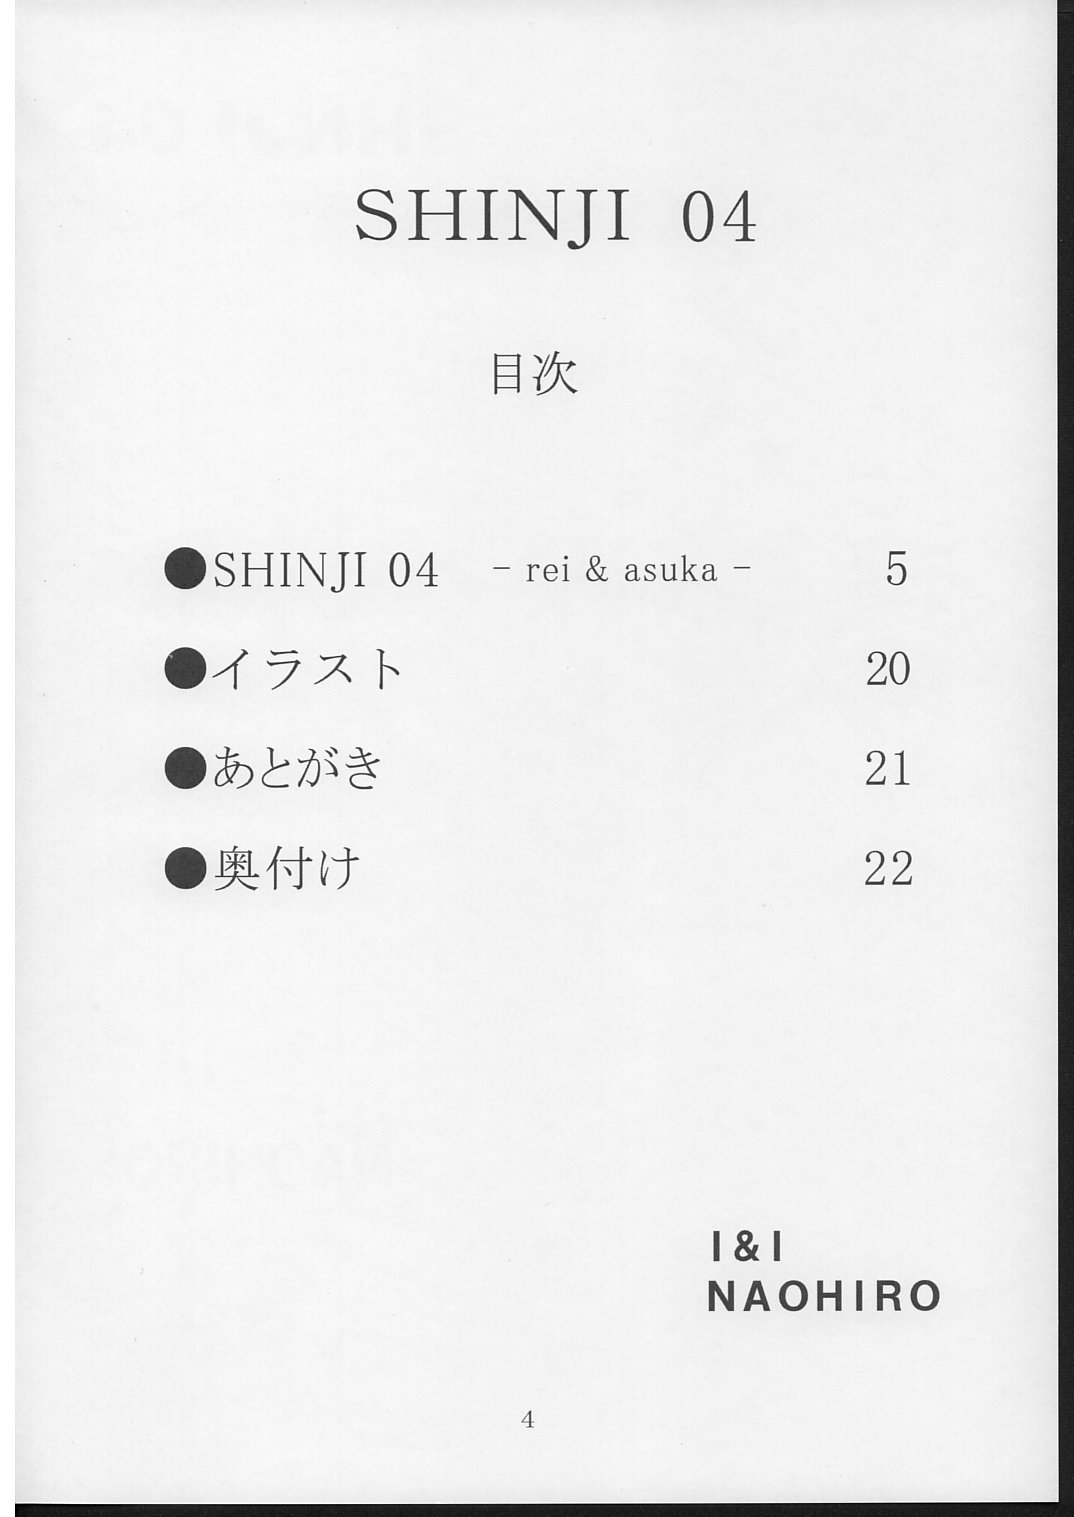 (SC29) [I&amp;I (Naohiro)] SHINJI 04 - rei &amp; askua (Evangelion) (SC29) [I&amp;I (Naohiro)] SHINJI 04 - rei &amp; askua (新世紀エヴァンゲリオン)